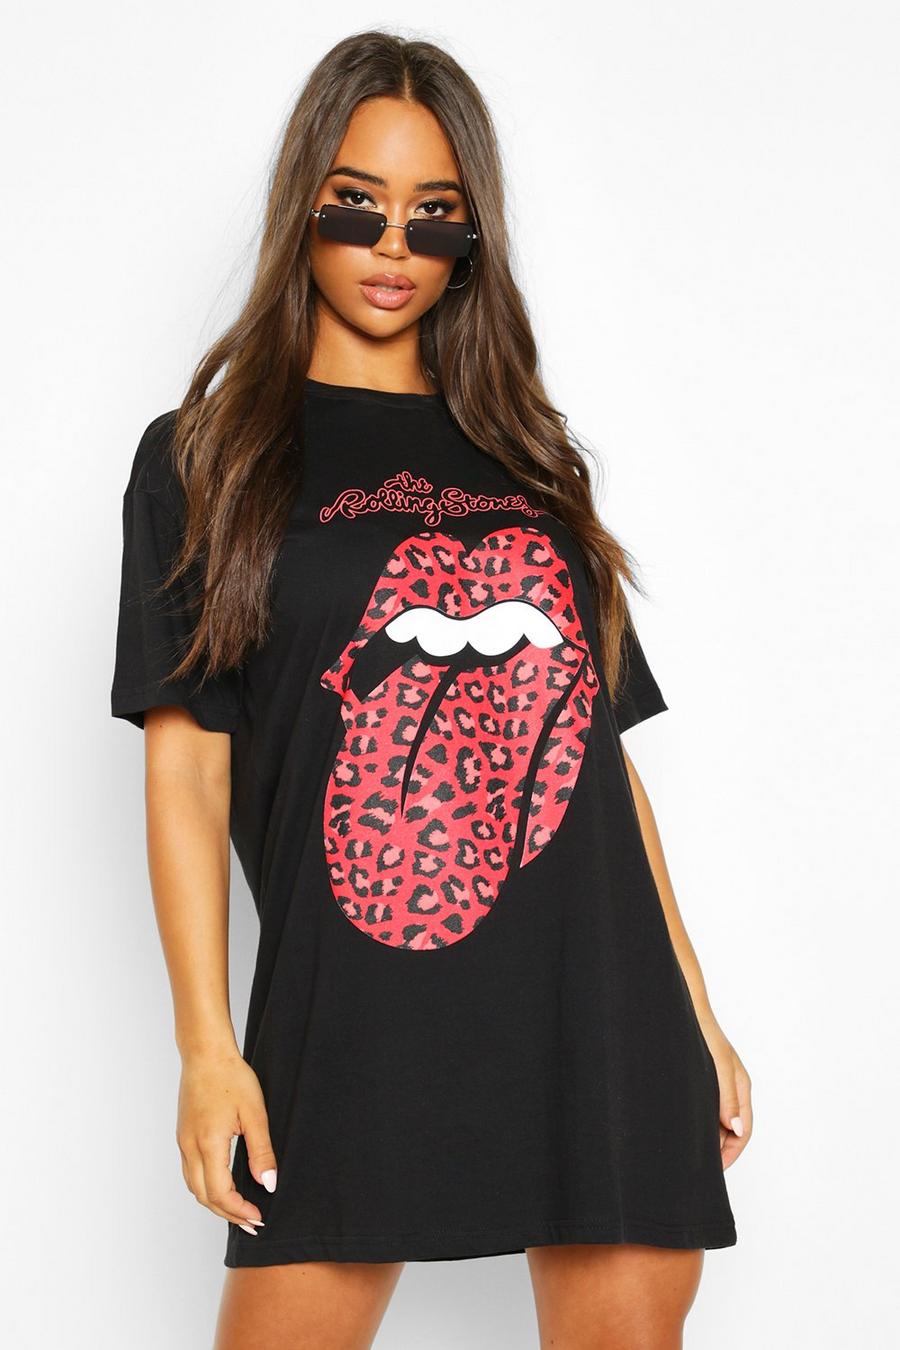 Black Rolling Stones Leopard Lips Licensed T-Shirt Dress image number 1